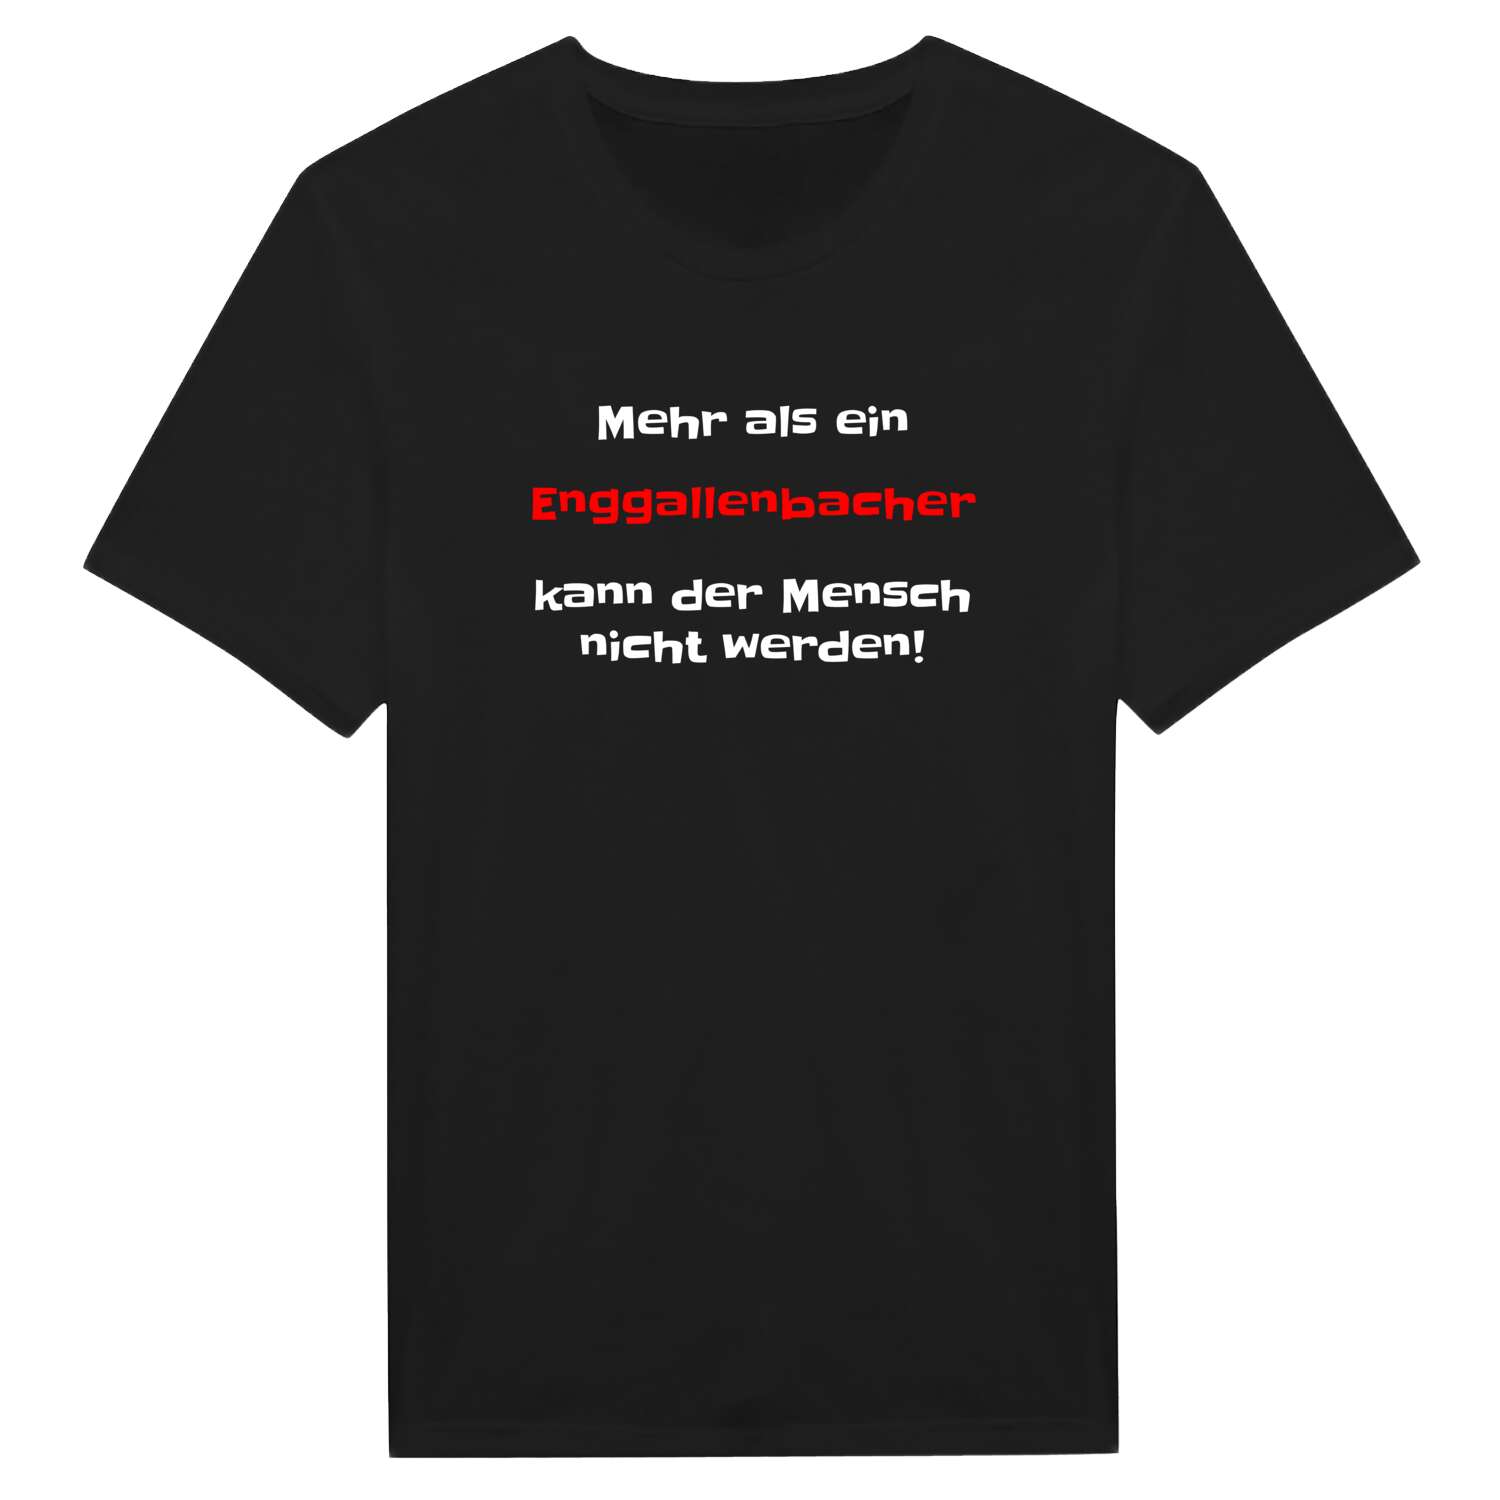 Enggallenbach T-Shirt »Mehr als ein«